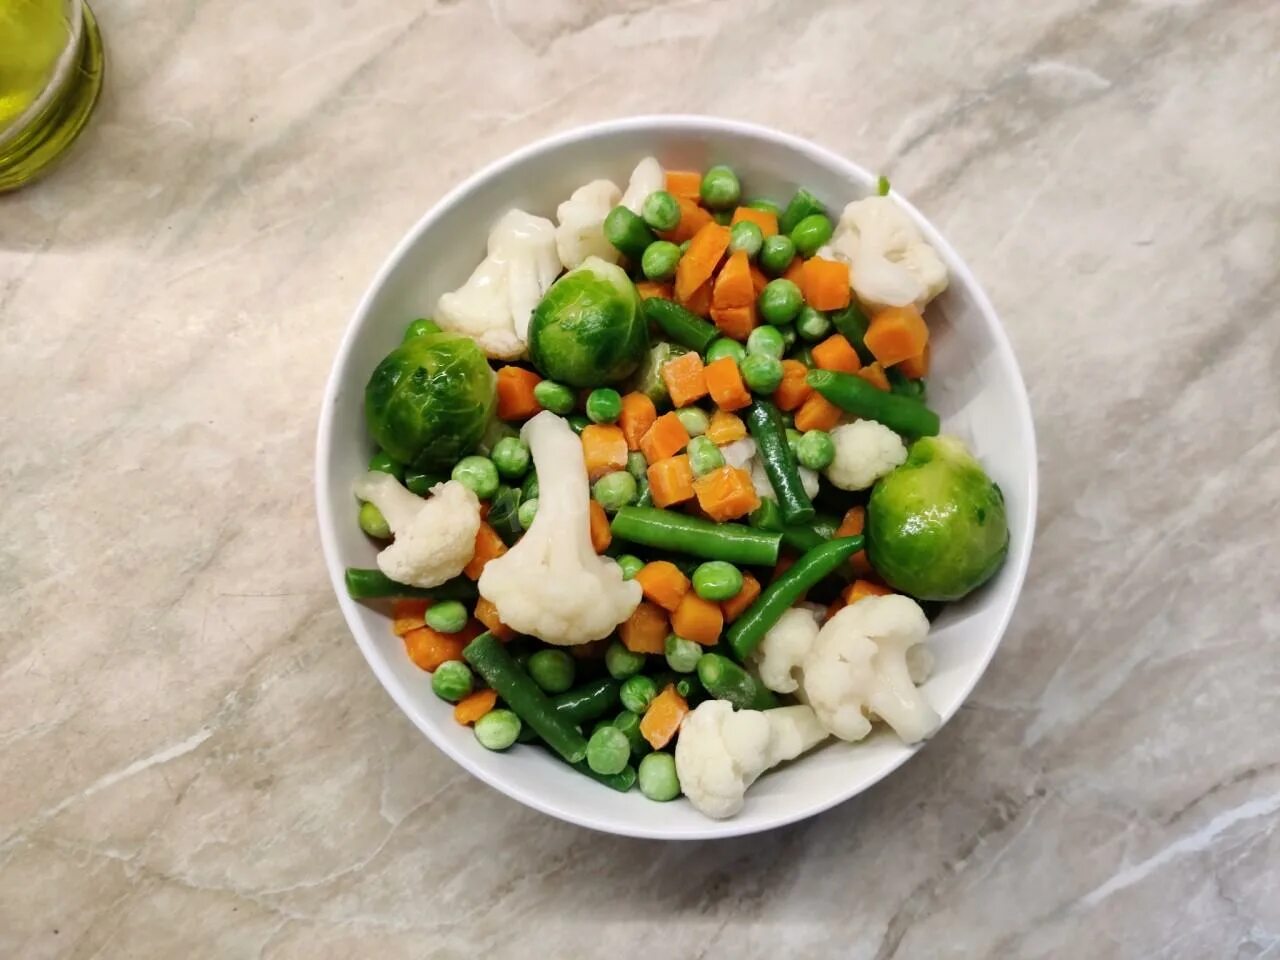 Варка замороженных овощей. Замороженные овощи для завтрака. Замороженные овощи на сковороде. Замороженные овощи в духовке. Вкусные замороженные овощи в духовке